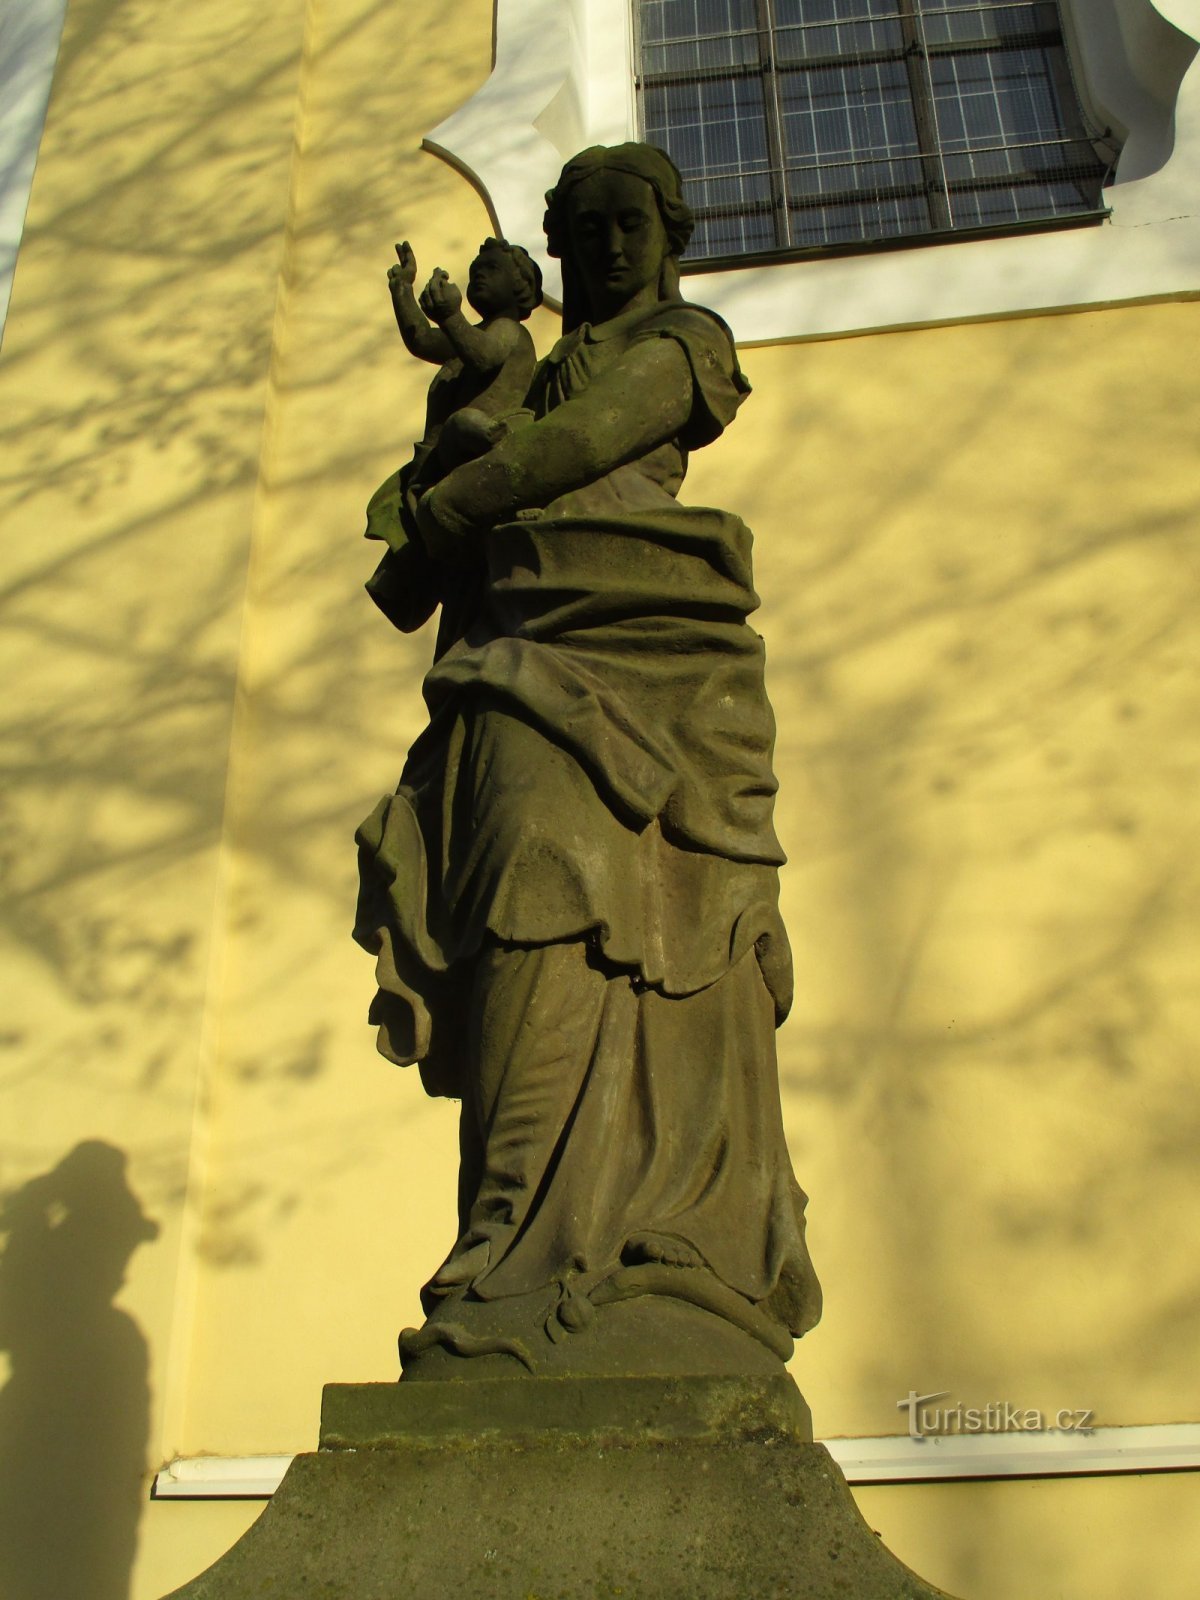 聖母マリア像 (Nový Hradec Králové、17.11.2019 年 XNUMX 月 XNUMX 日)